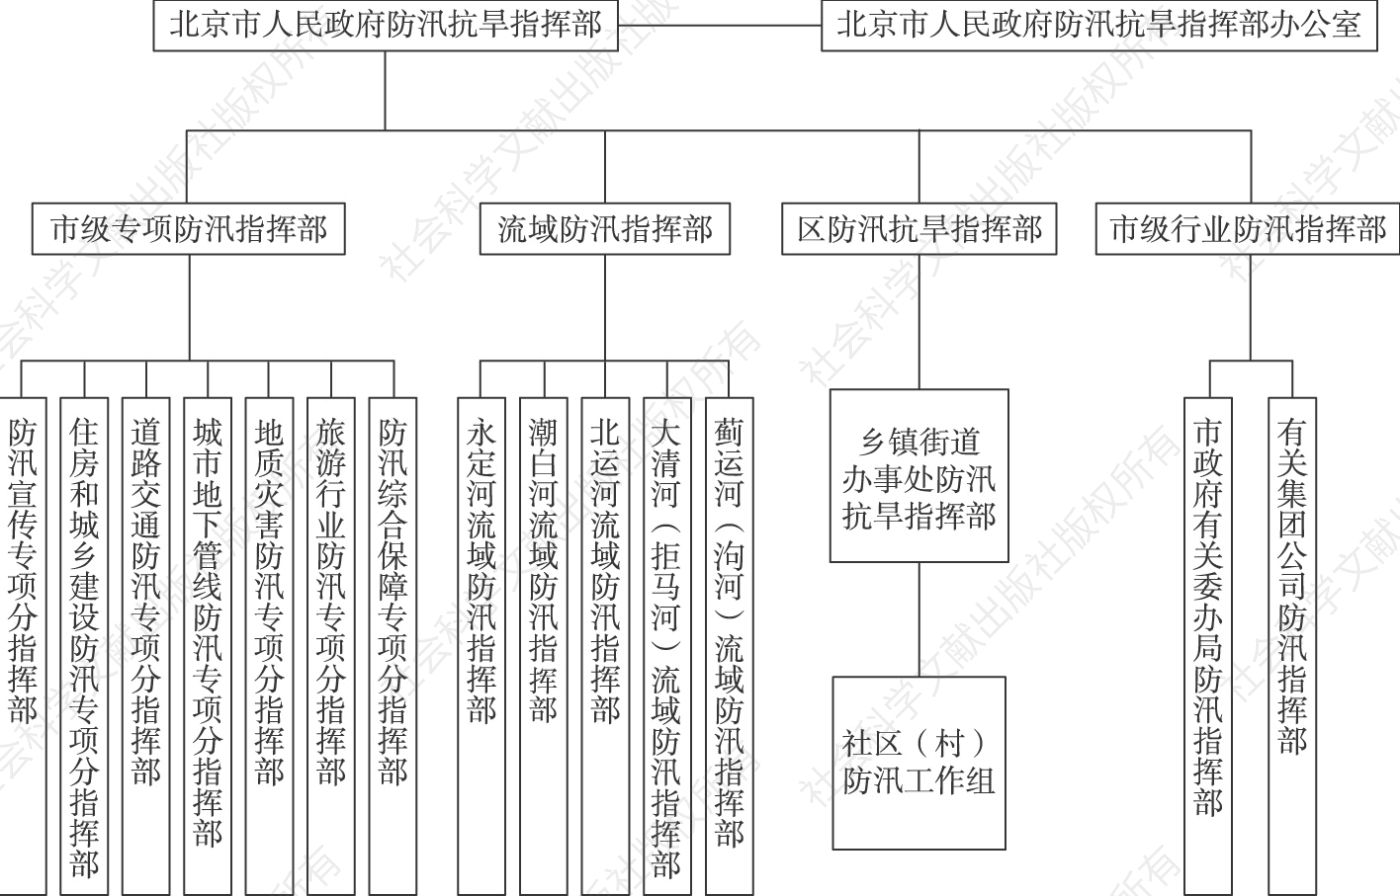 图2 北京市防汛指挥体系